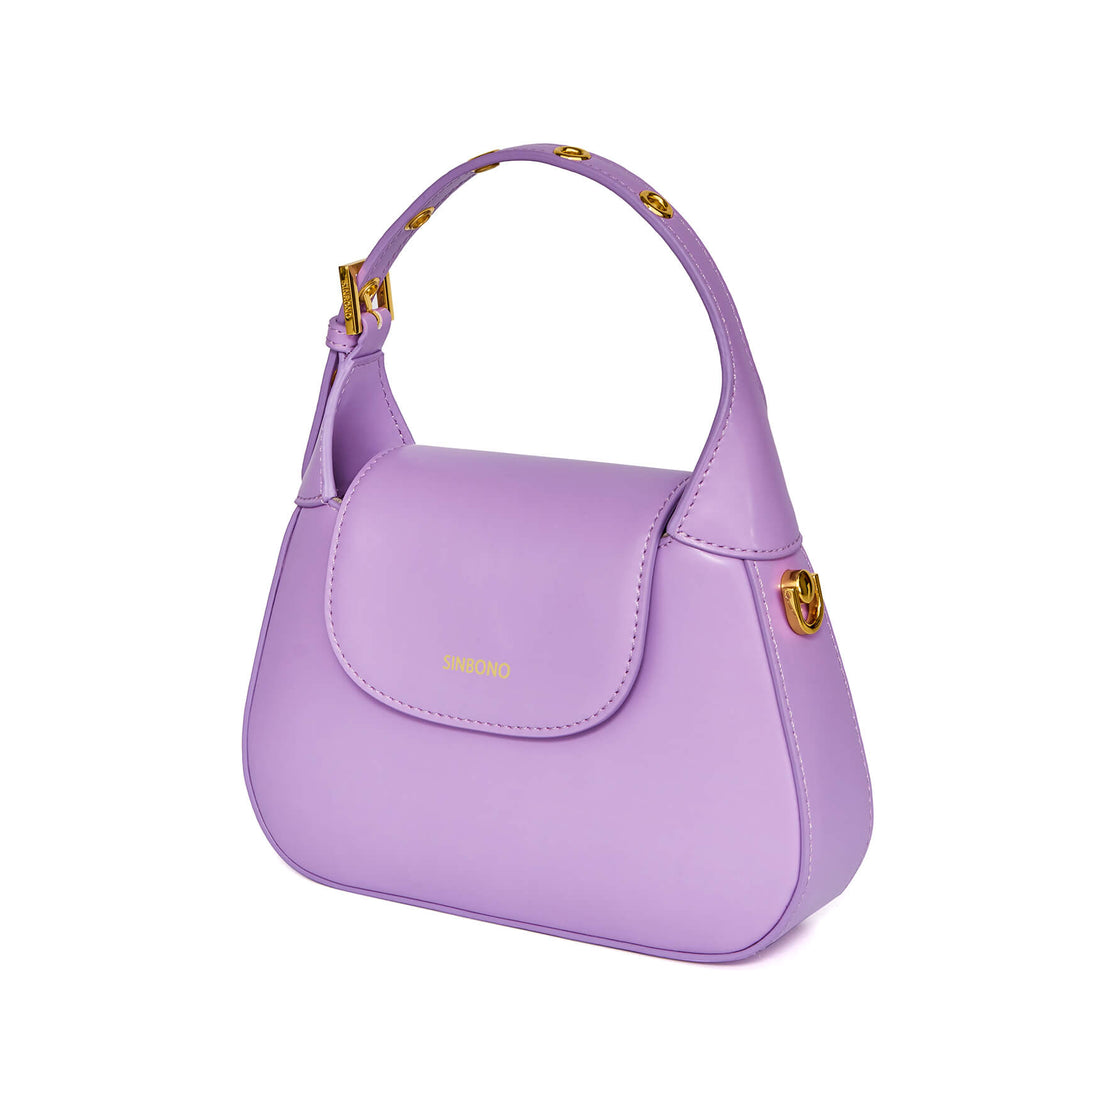 SINBONO Alice Top Handle Crossbody Bag Purple